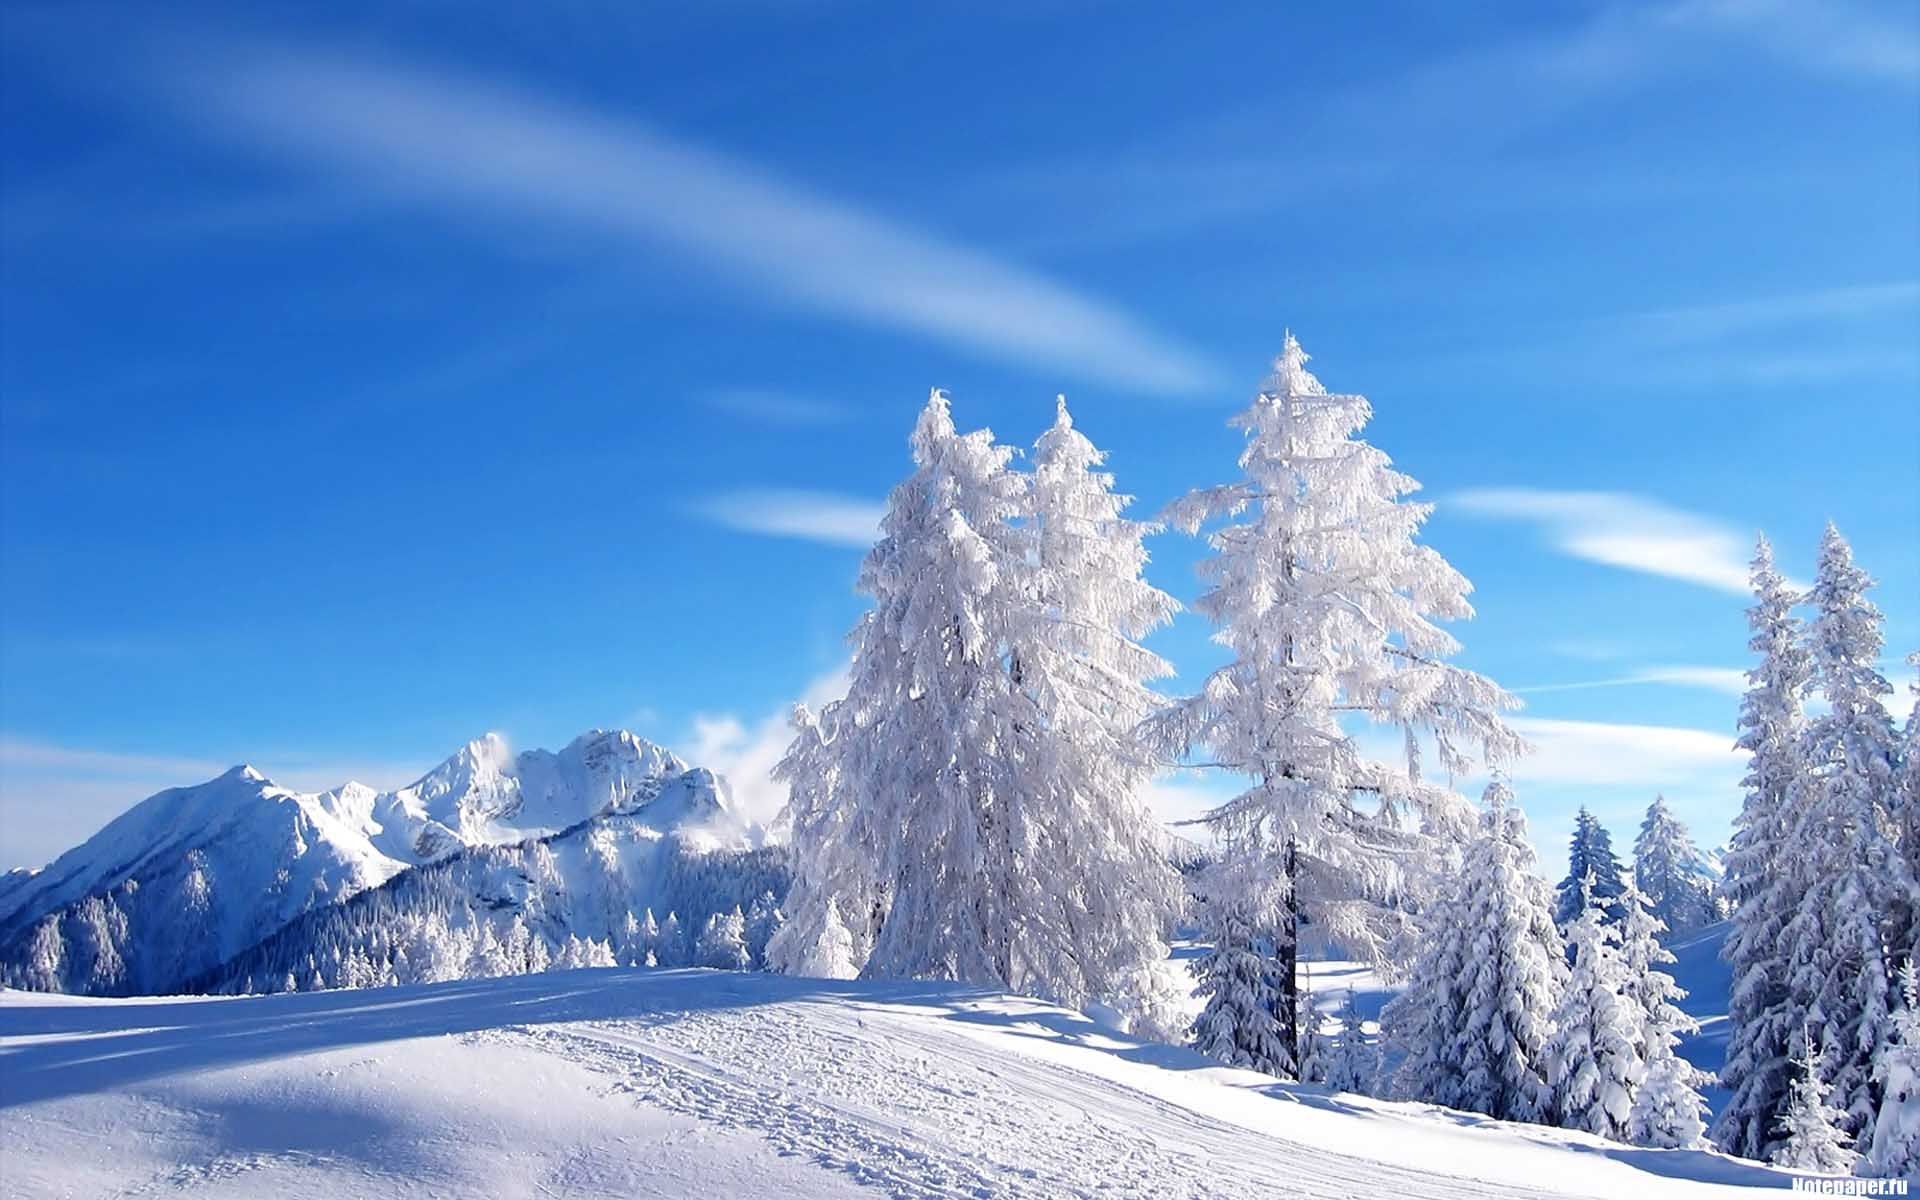 snow scenes photography. Snow Scenes Desktop Wallpaper in HD